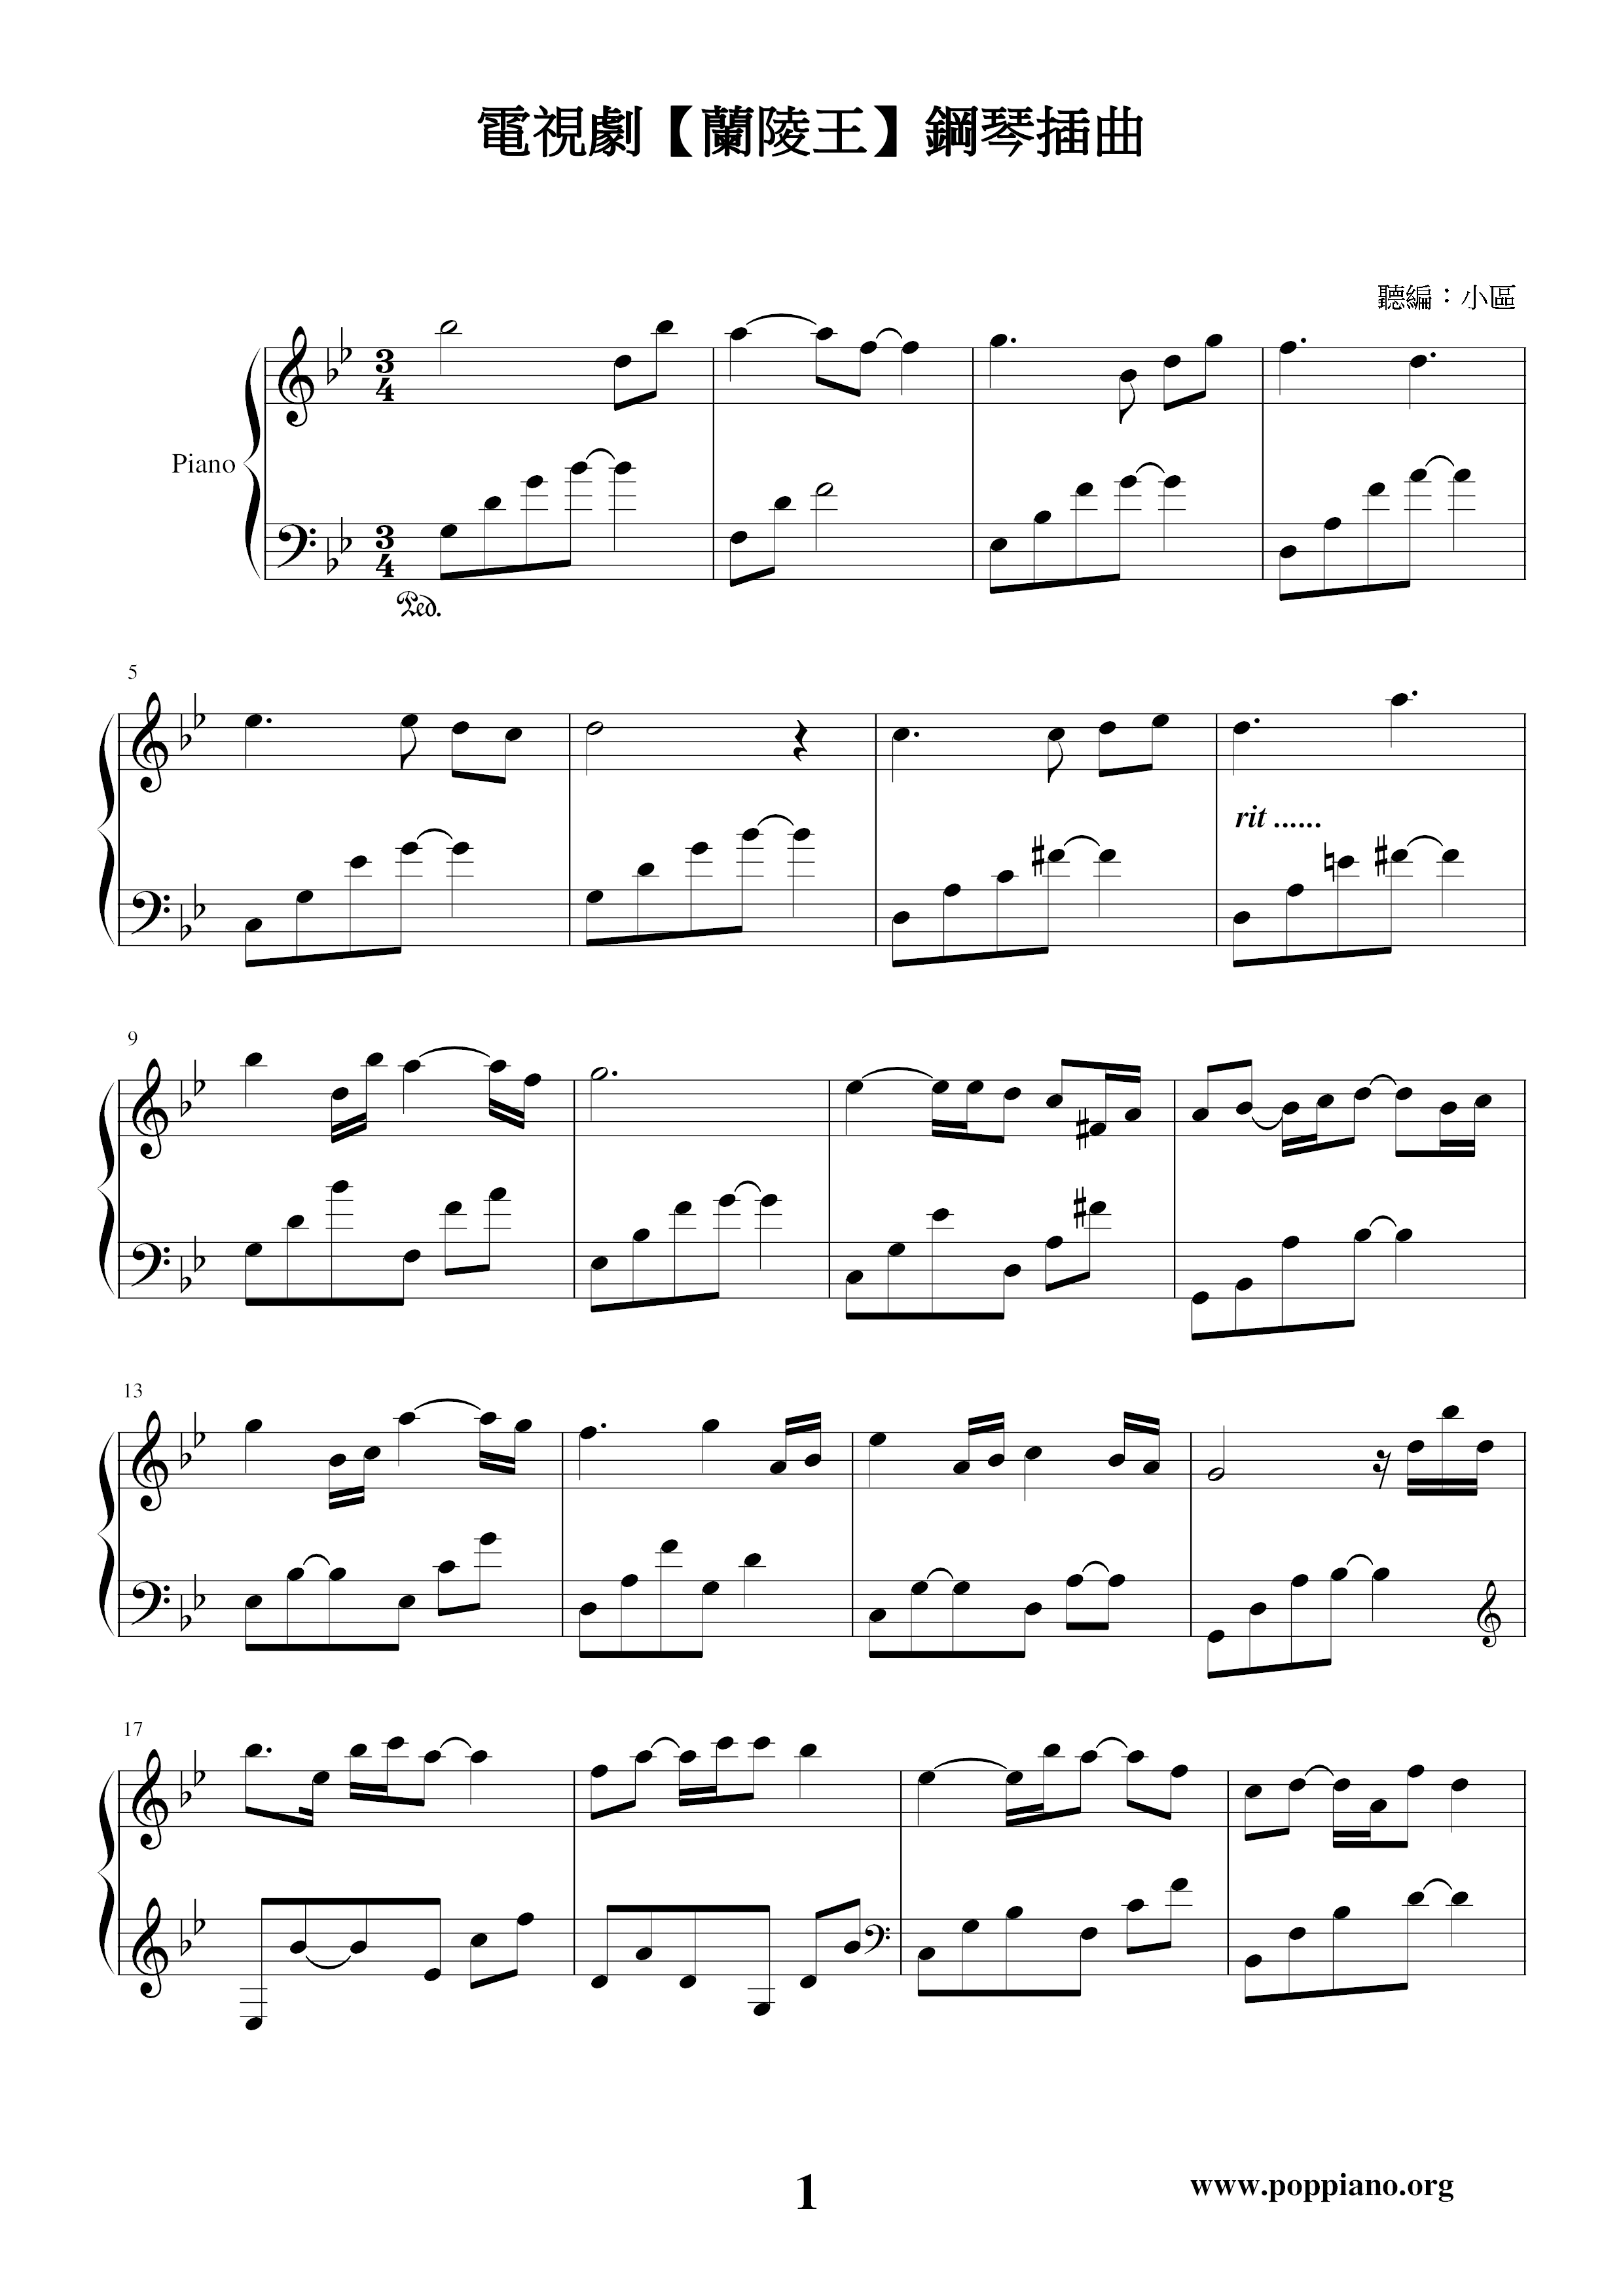 Prince of Lan Ling-Piano Episode Score